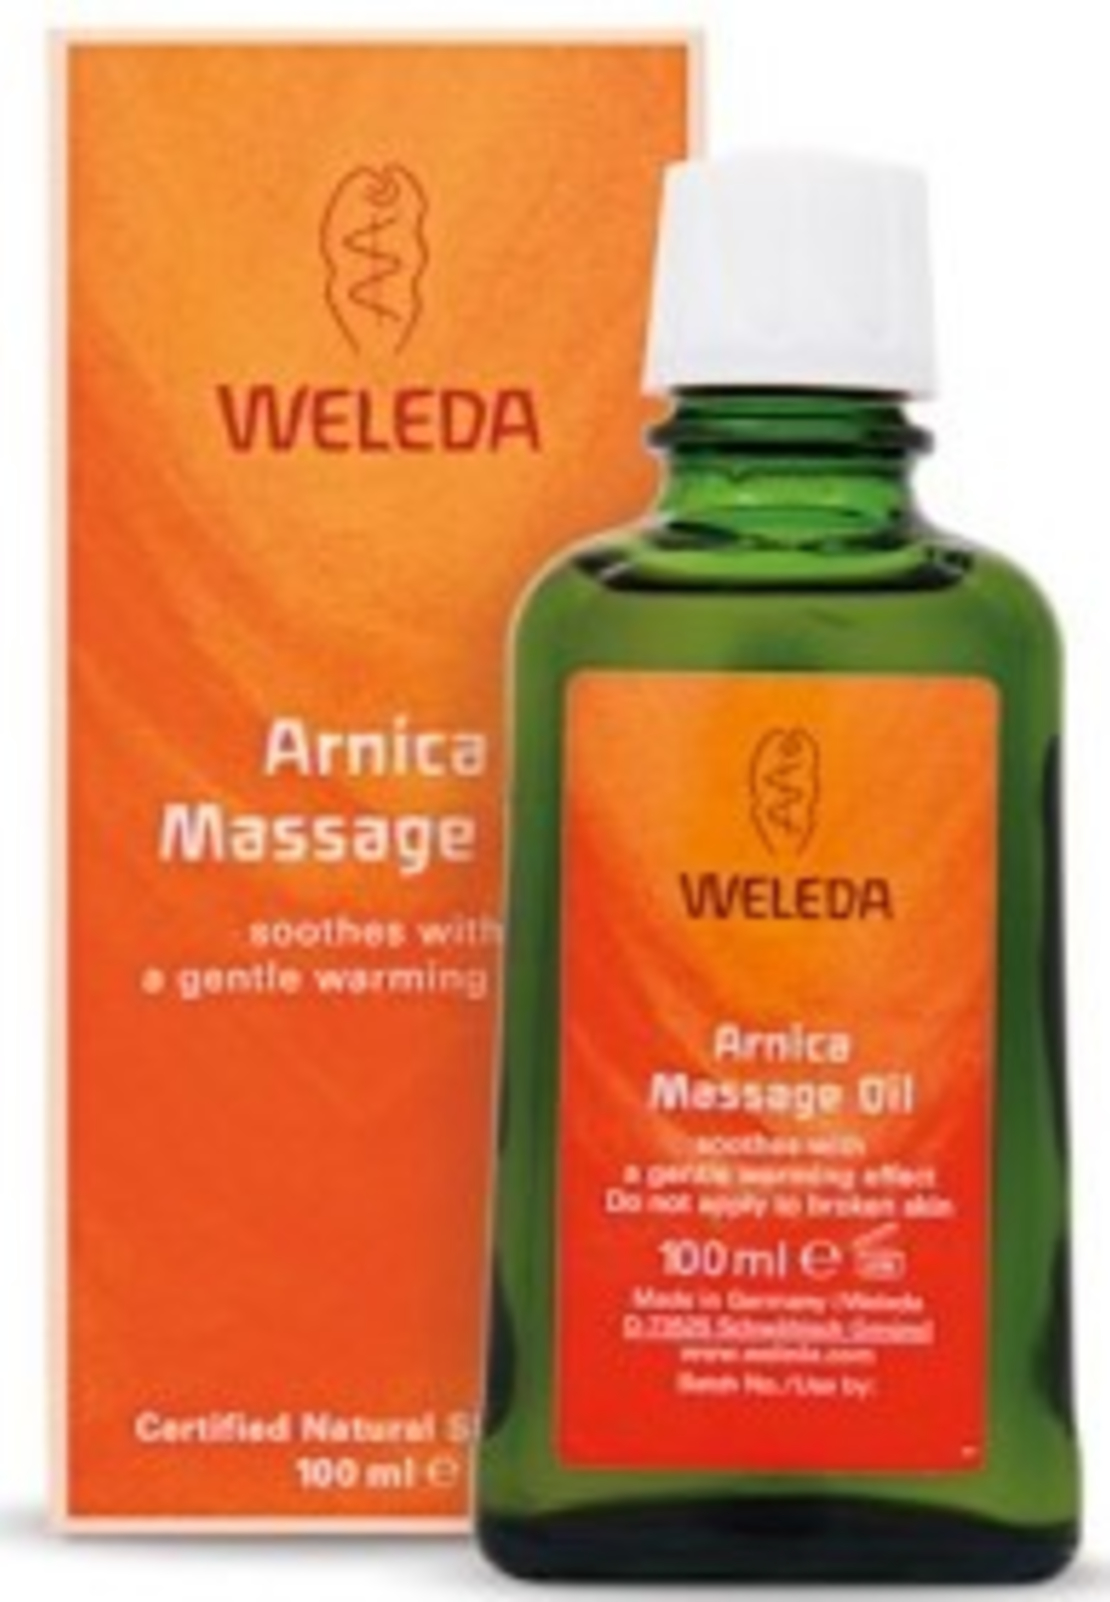 וולדה - שמן עיסוי עם ארניקה Weleda Arnica Massage Oil